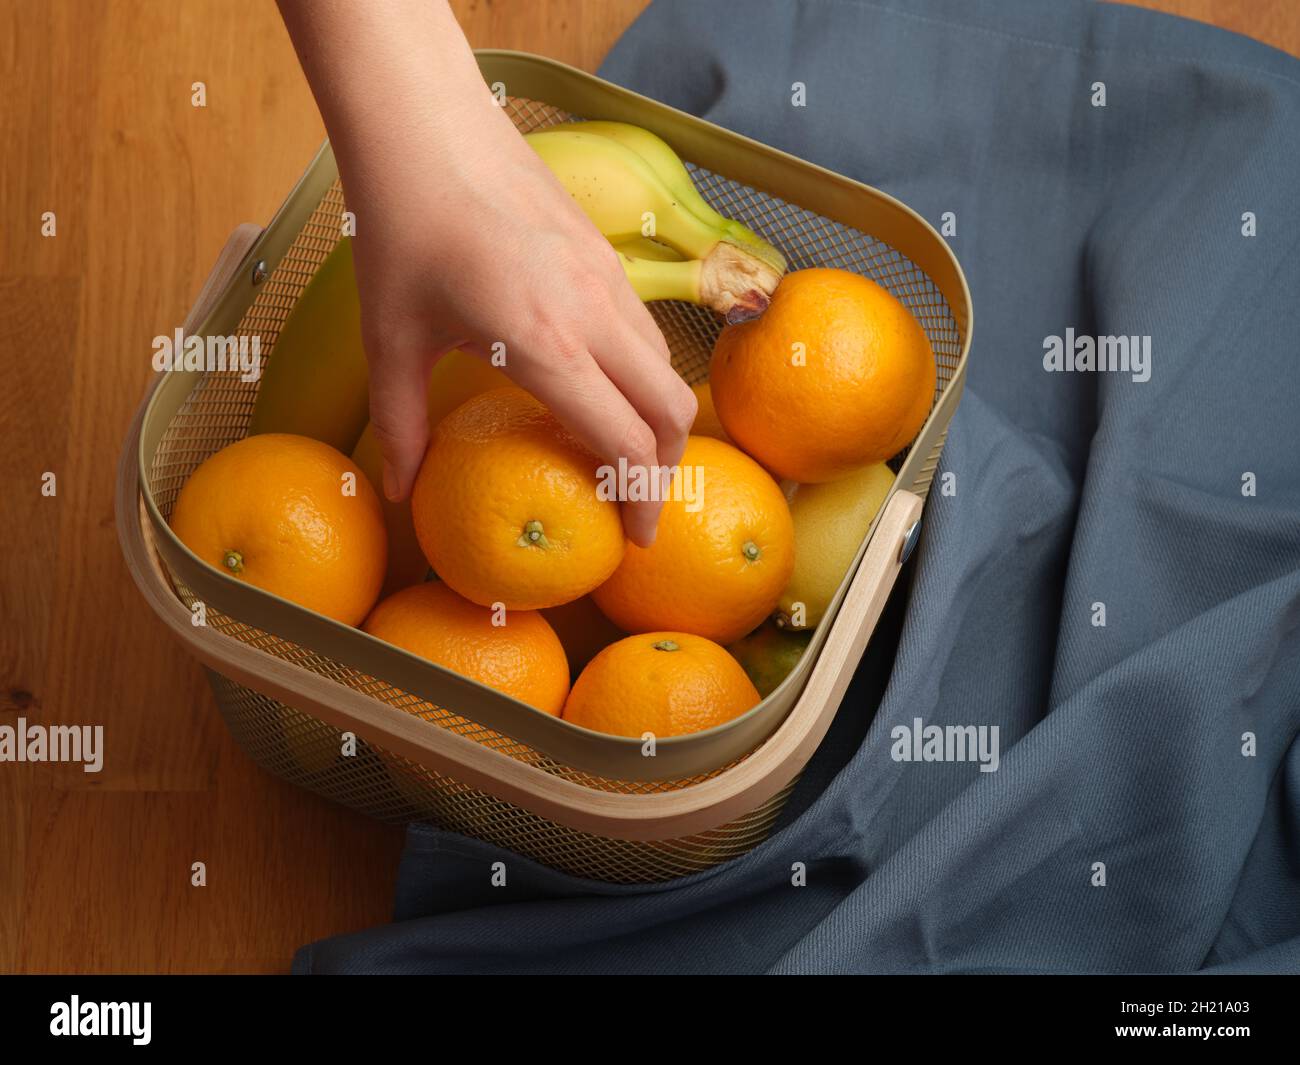 Une femme mettant sa main dans un panier de fruits et tirant une orange.Gros plan. Banque D'Images